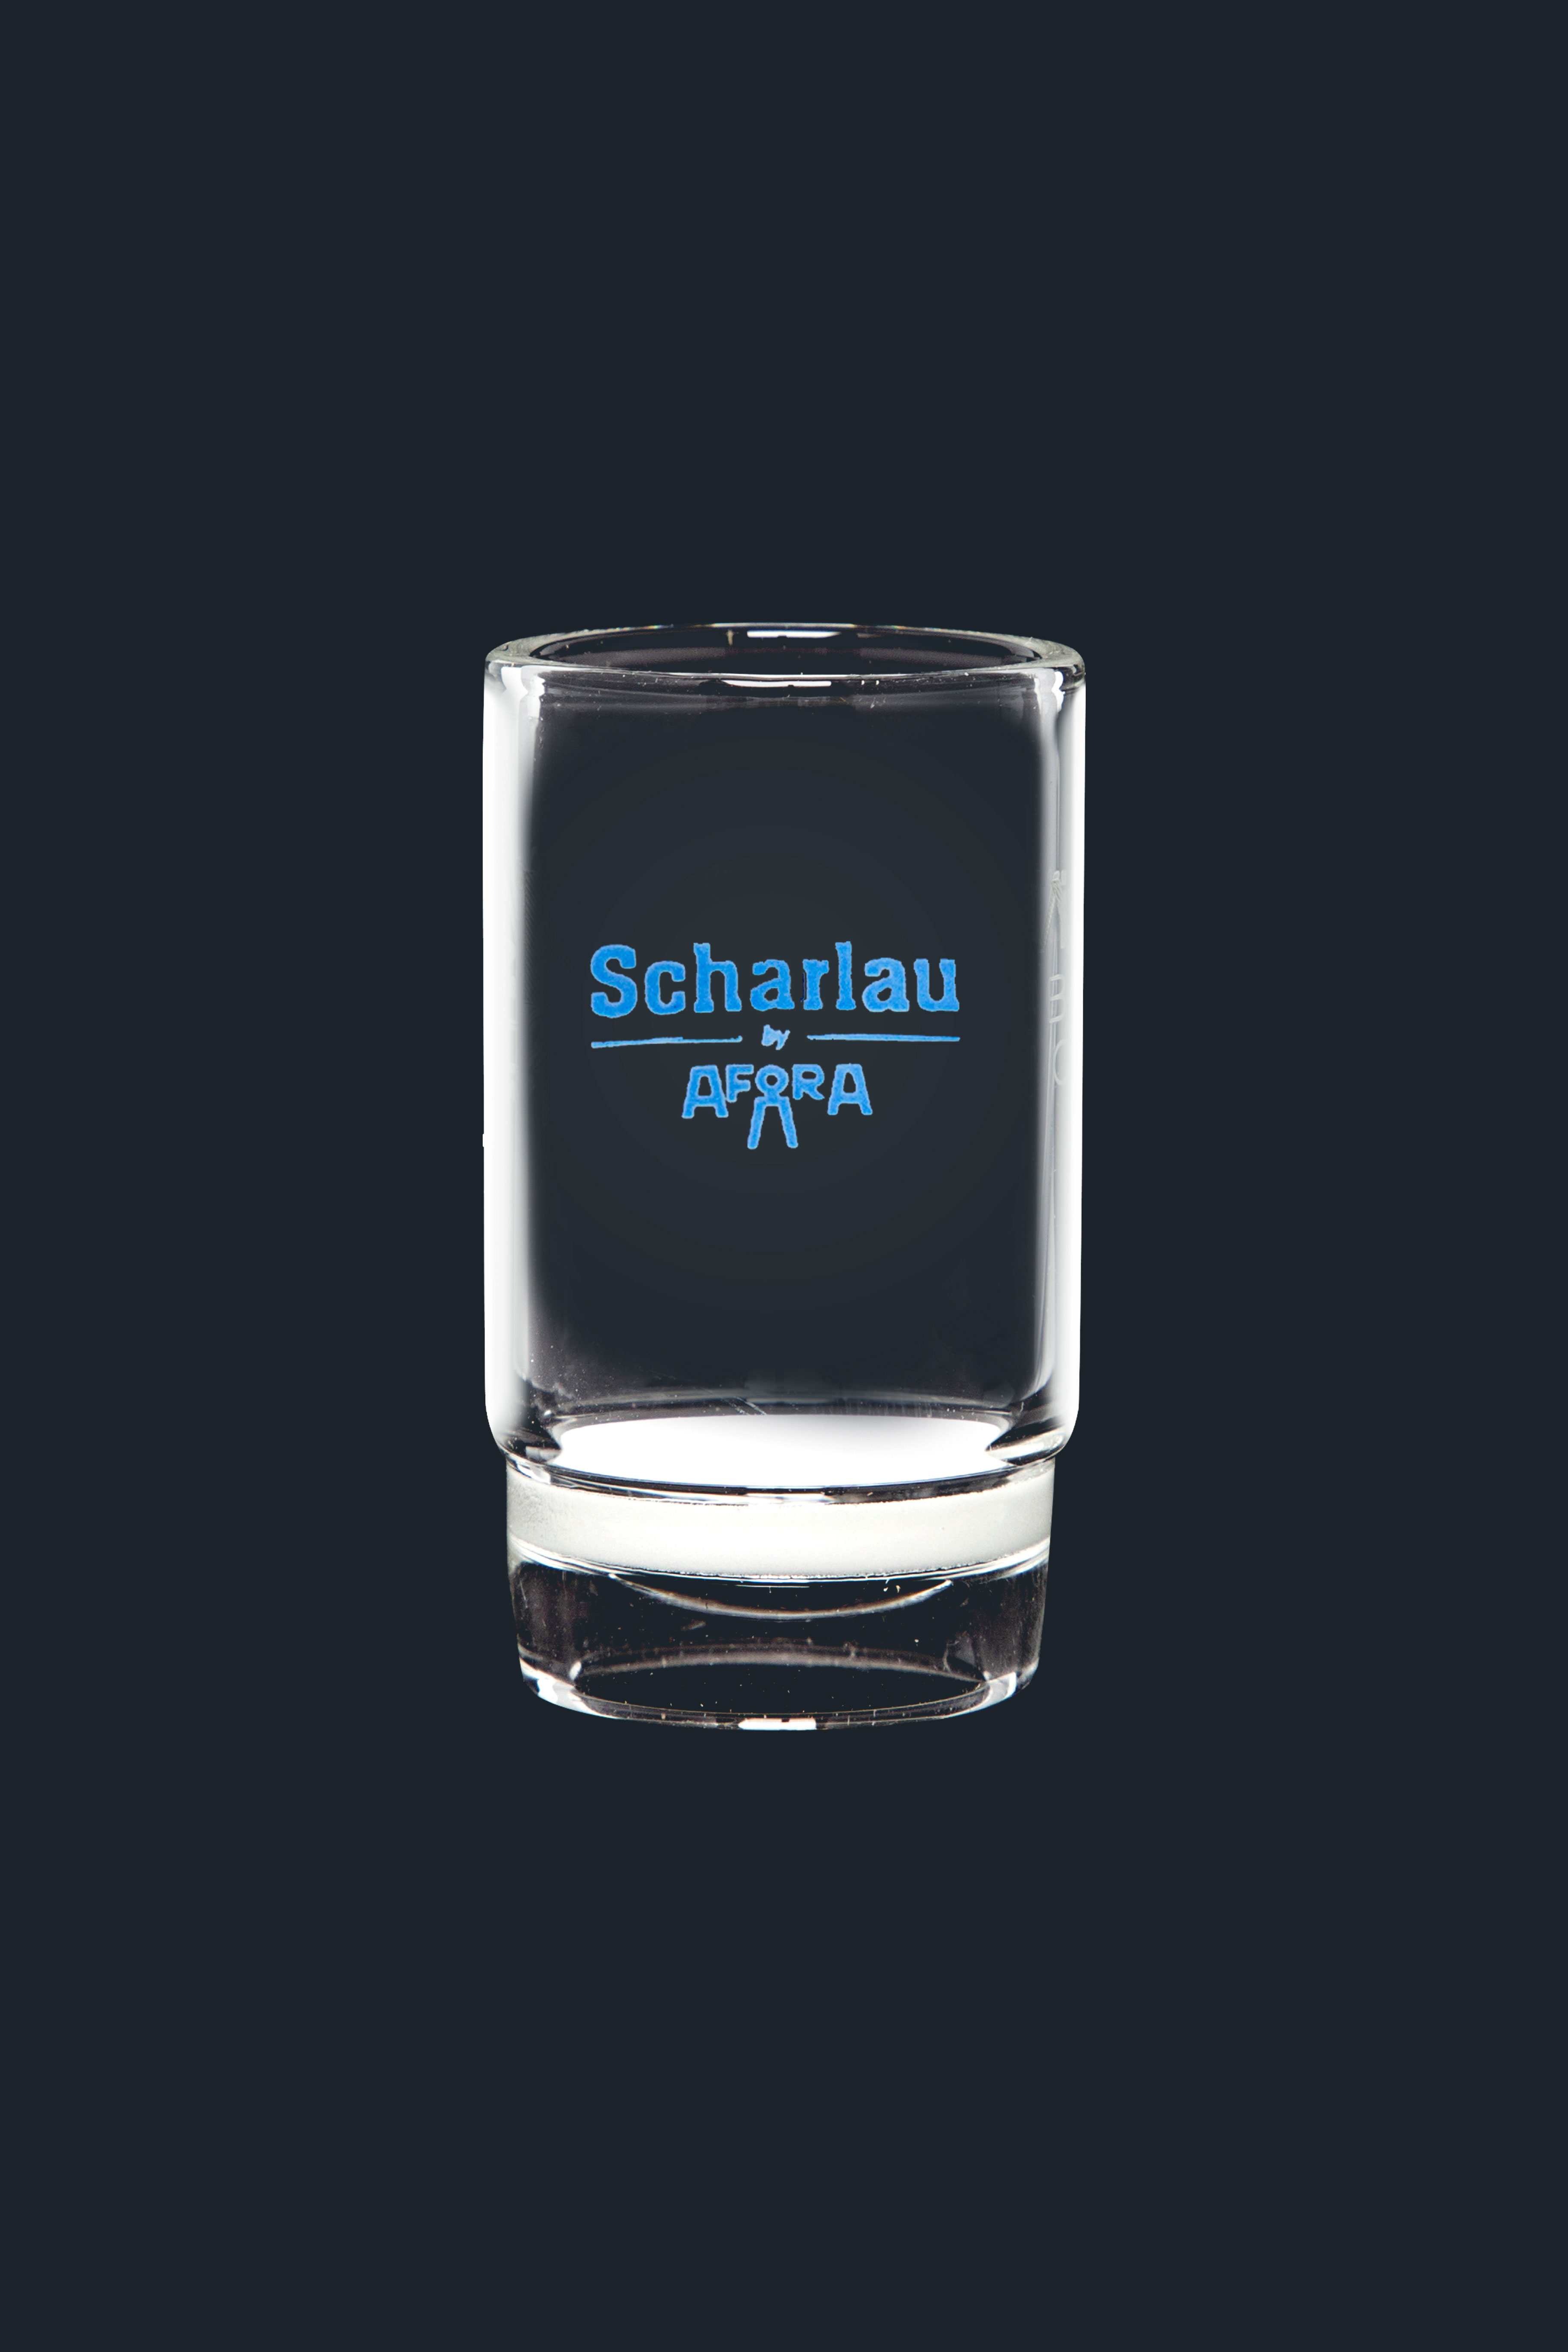 Crisoles de vidrio con placa filtrante. SCHARLAU. Cap. (ml): 8. Placa Ø (mm) : 20. Ø (mm): 24. Poro: 4. Altura (mm): 42